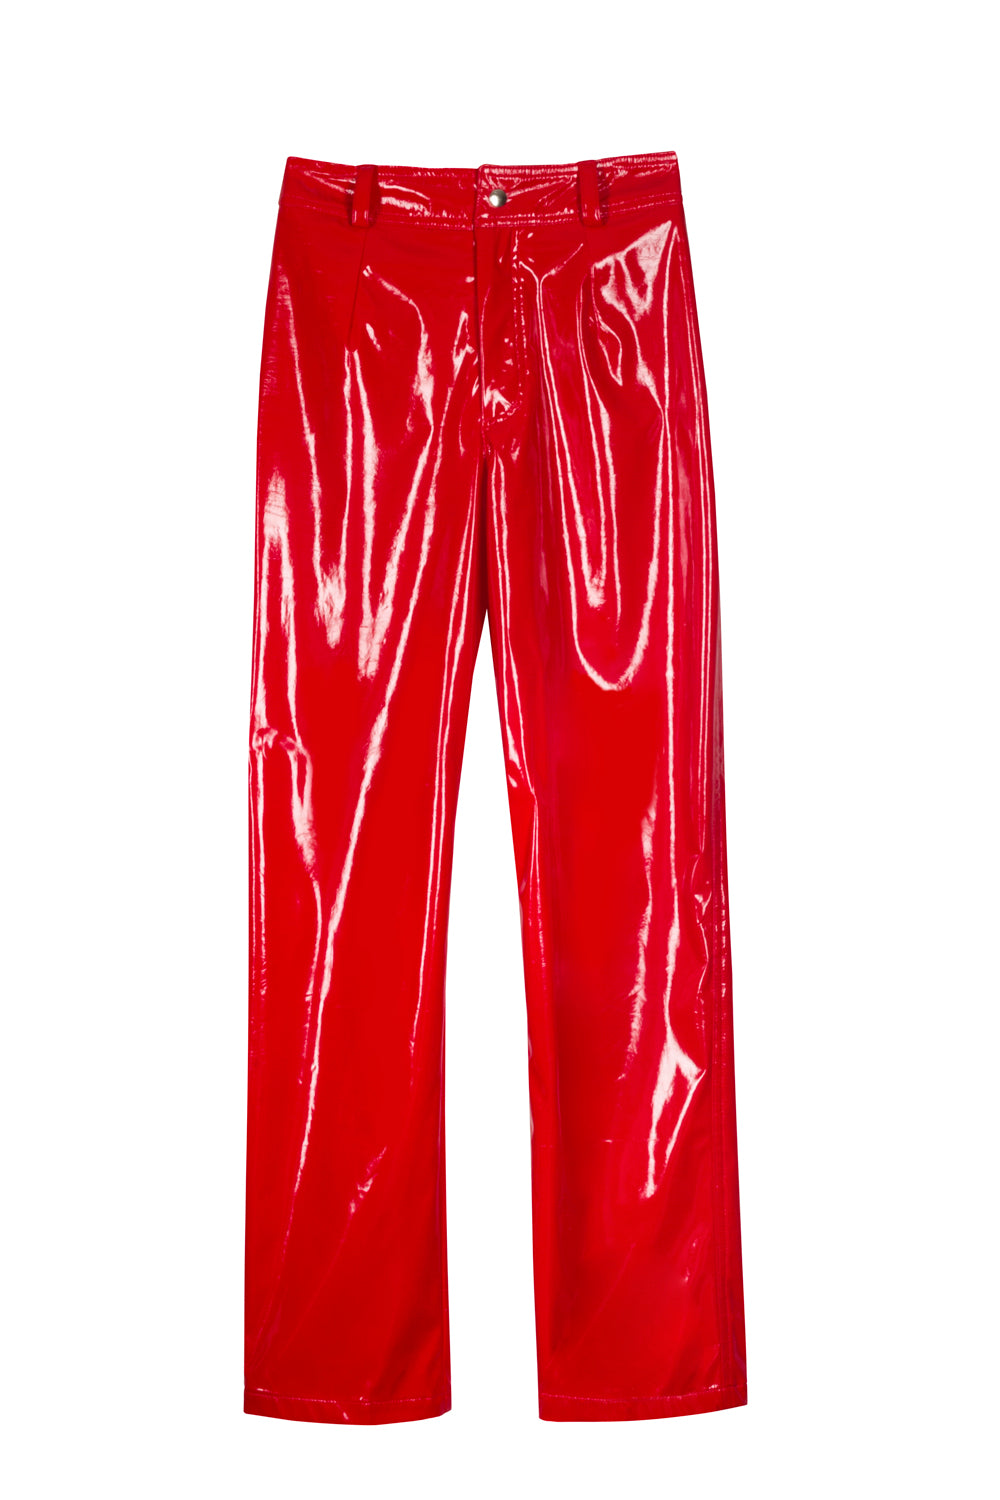 Plastic Pants Red, Paloma Lira